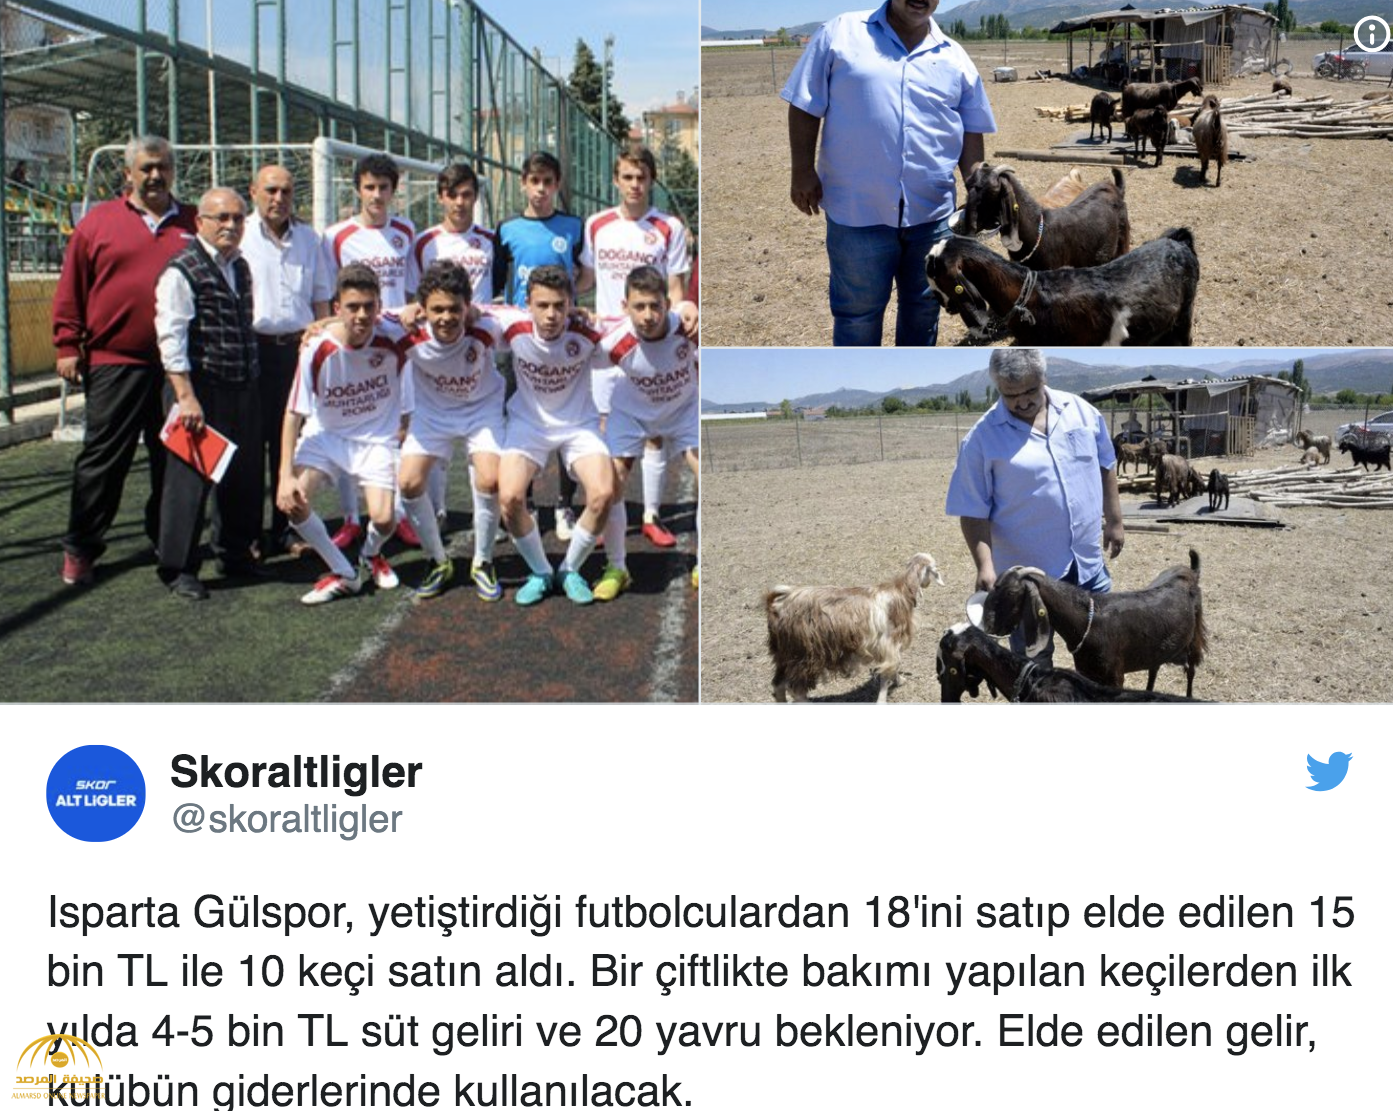 شاهد بالصور.. نادي كرة قدم تركي يبيع 18 لاعبا ليشتري 10 رؤوس ماعز تنتج الحليب!